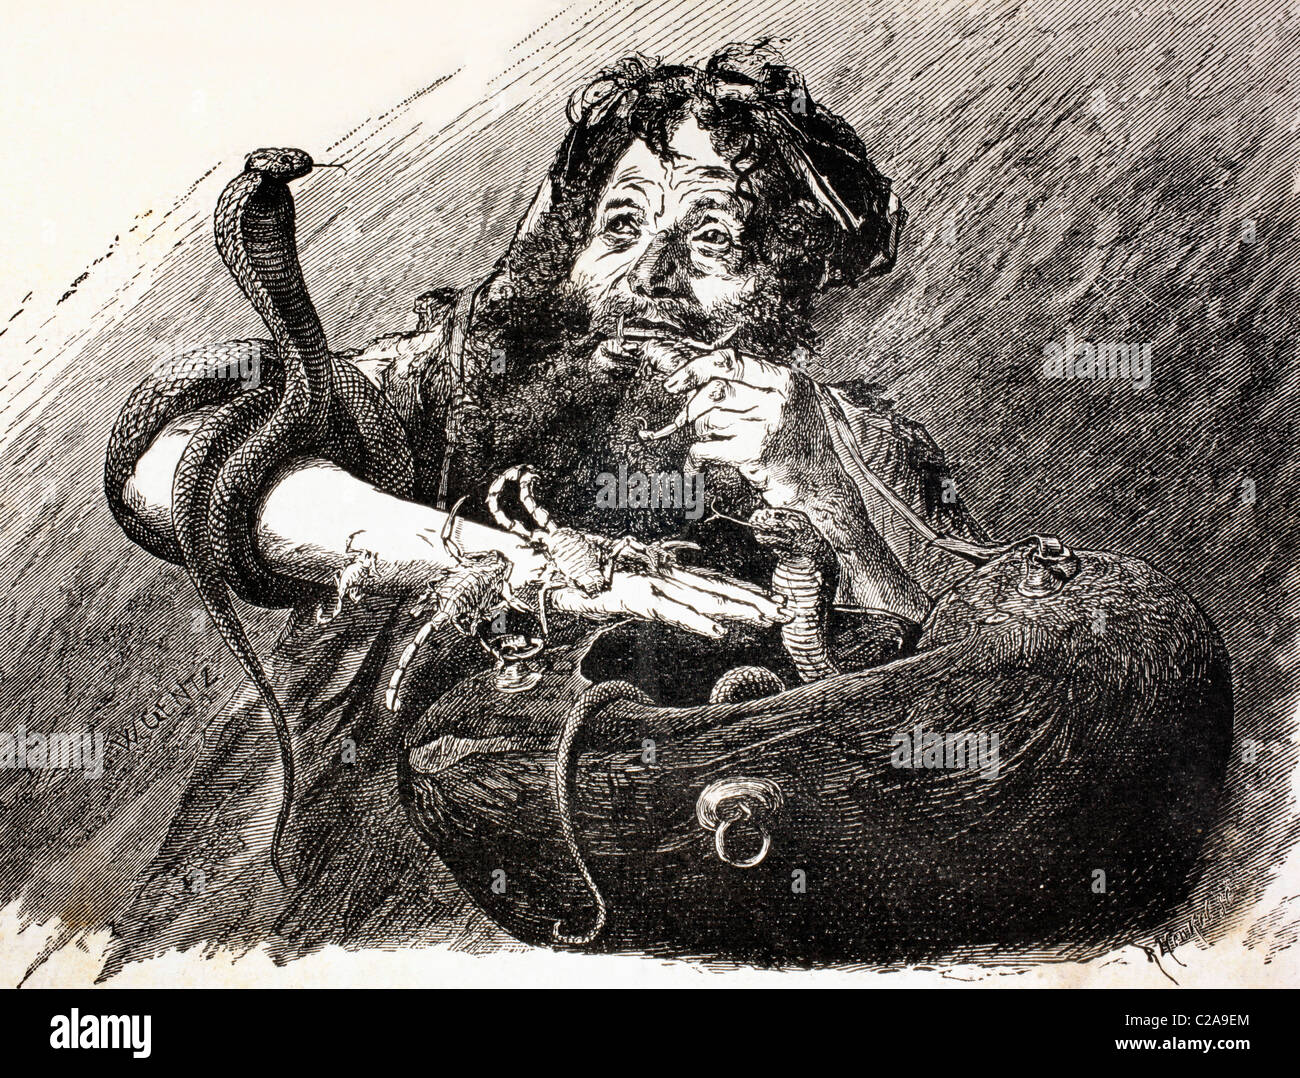 Un Derviche egipcio en el siglo xix, comer escorpiones. Foto de stock